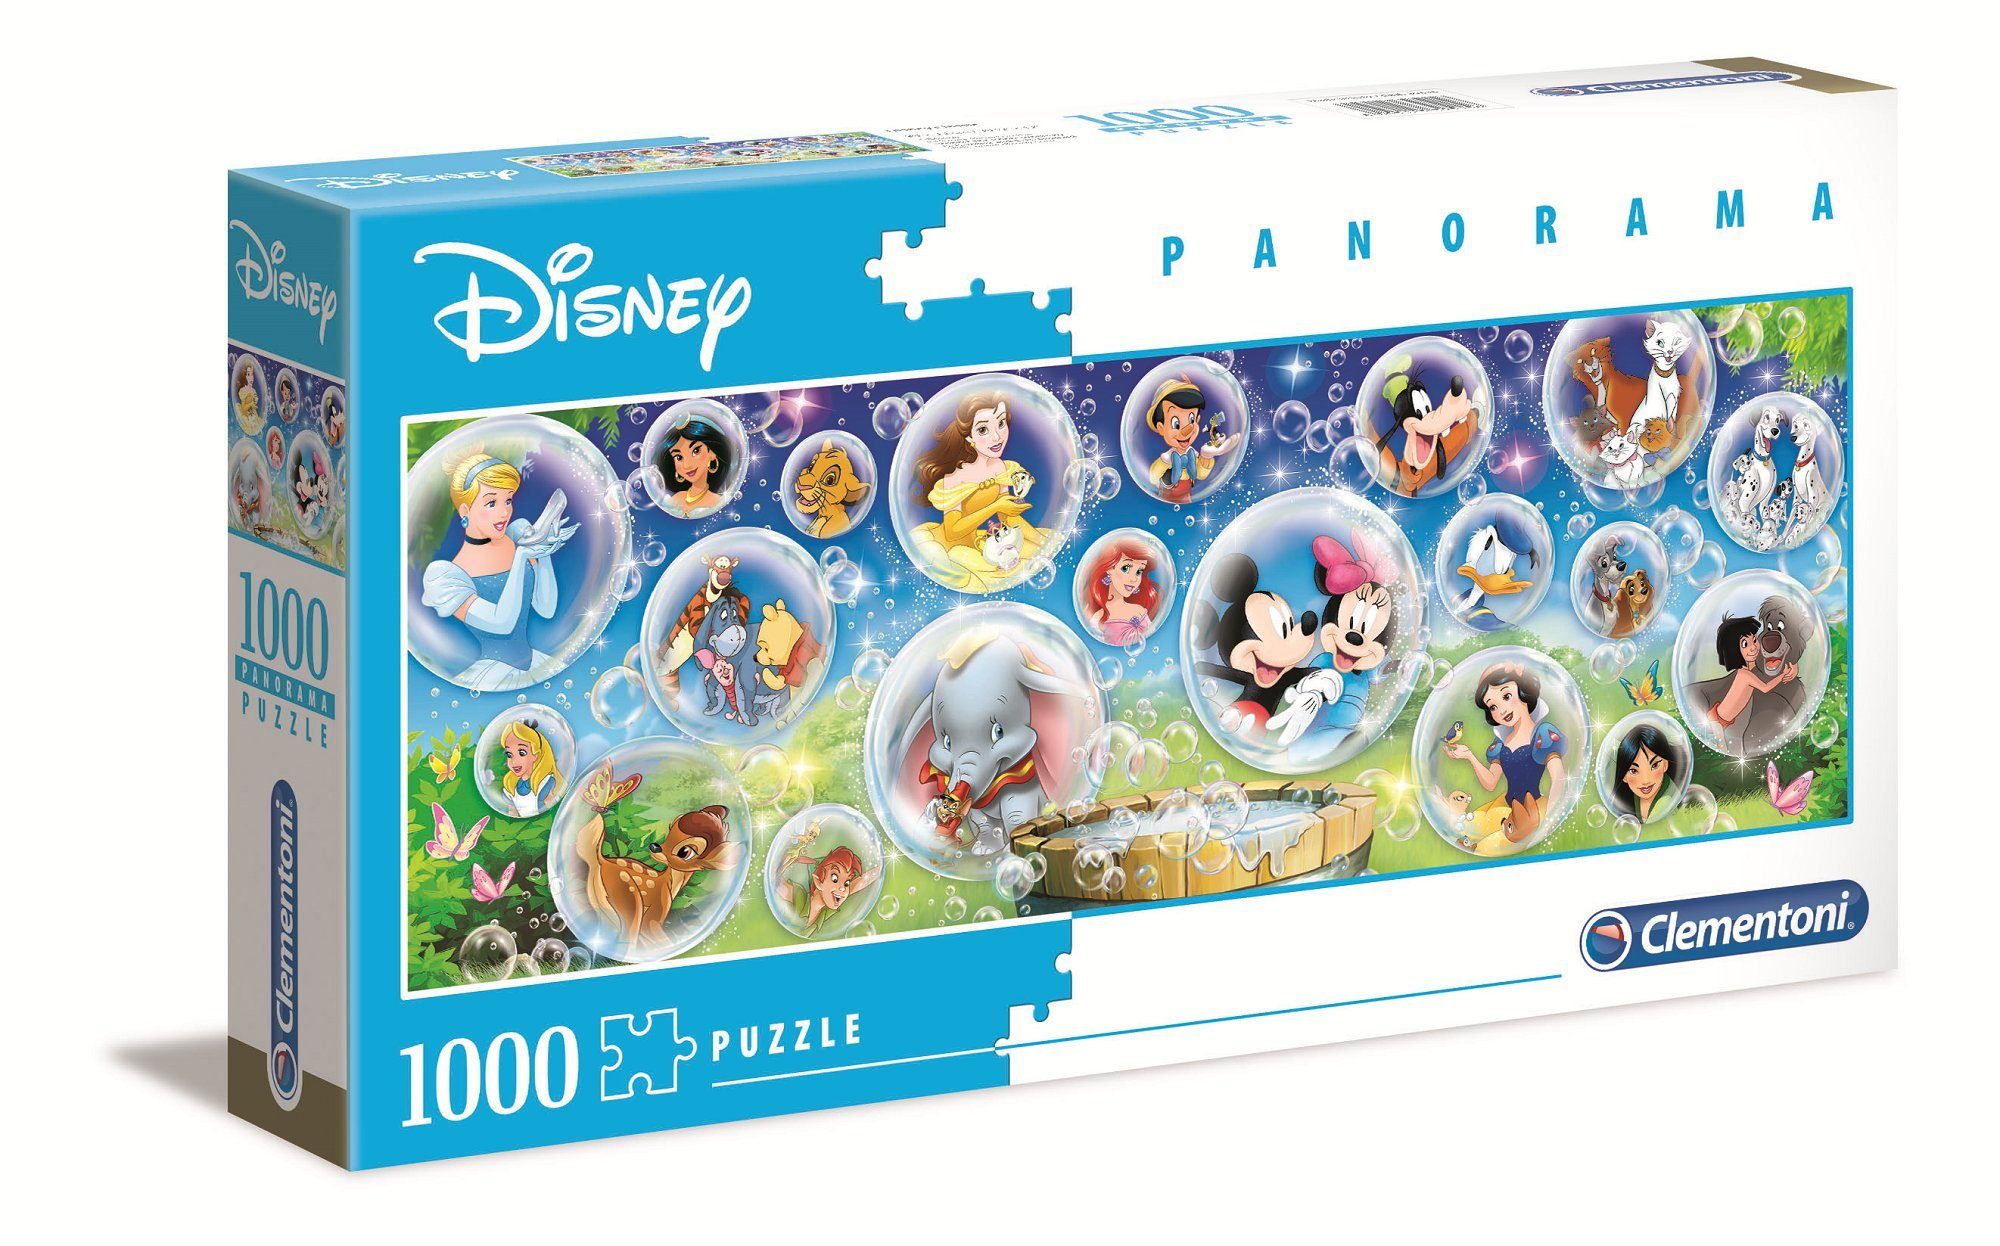 39515 Teile Puzzle Clementoni® Panorama 1000 Classic Puzzle, Disney Puzzleteile 1000